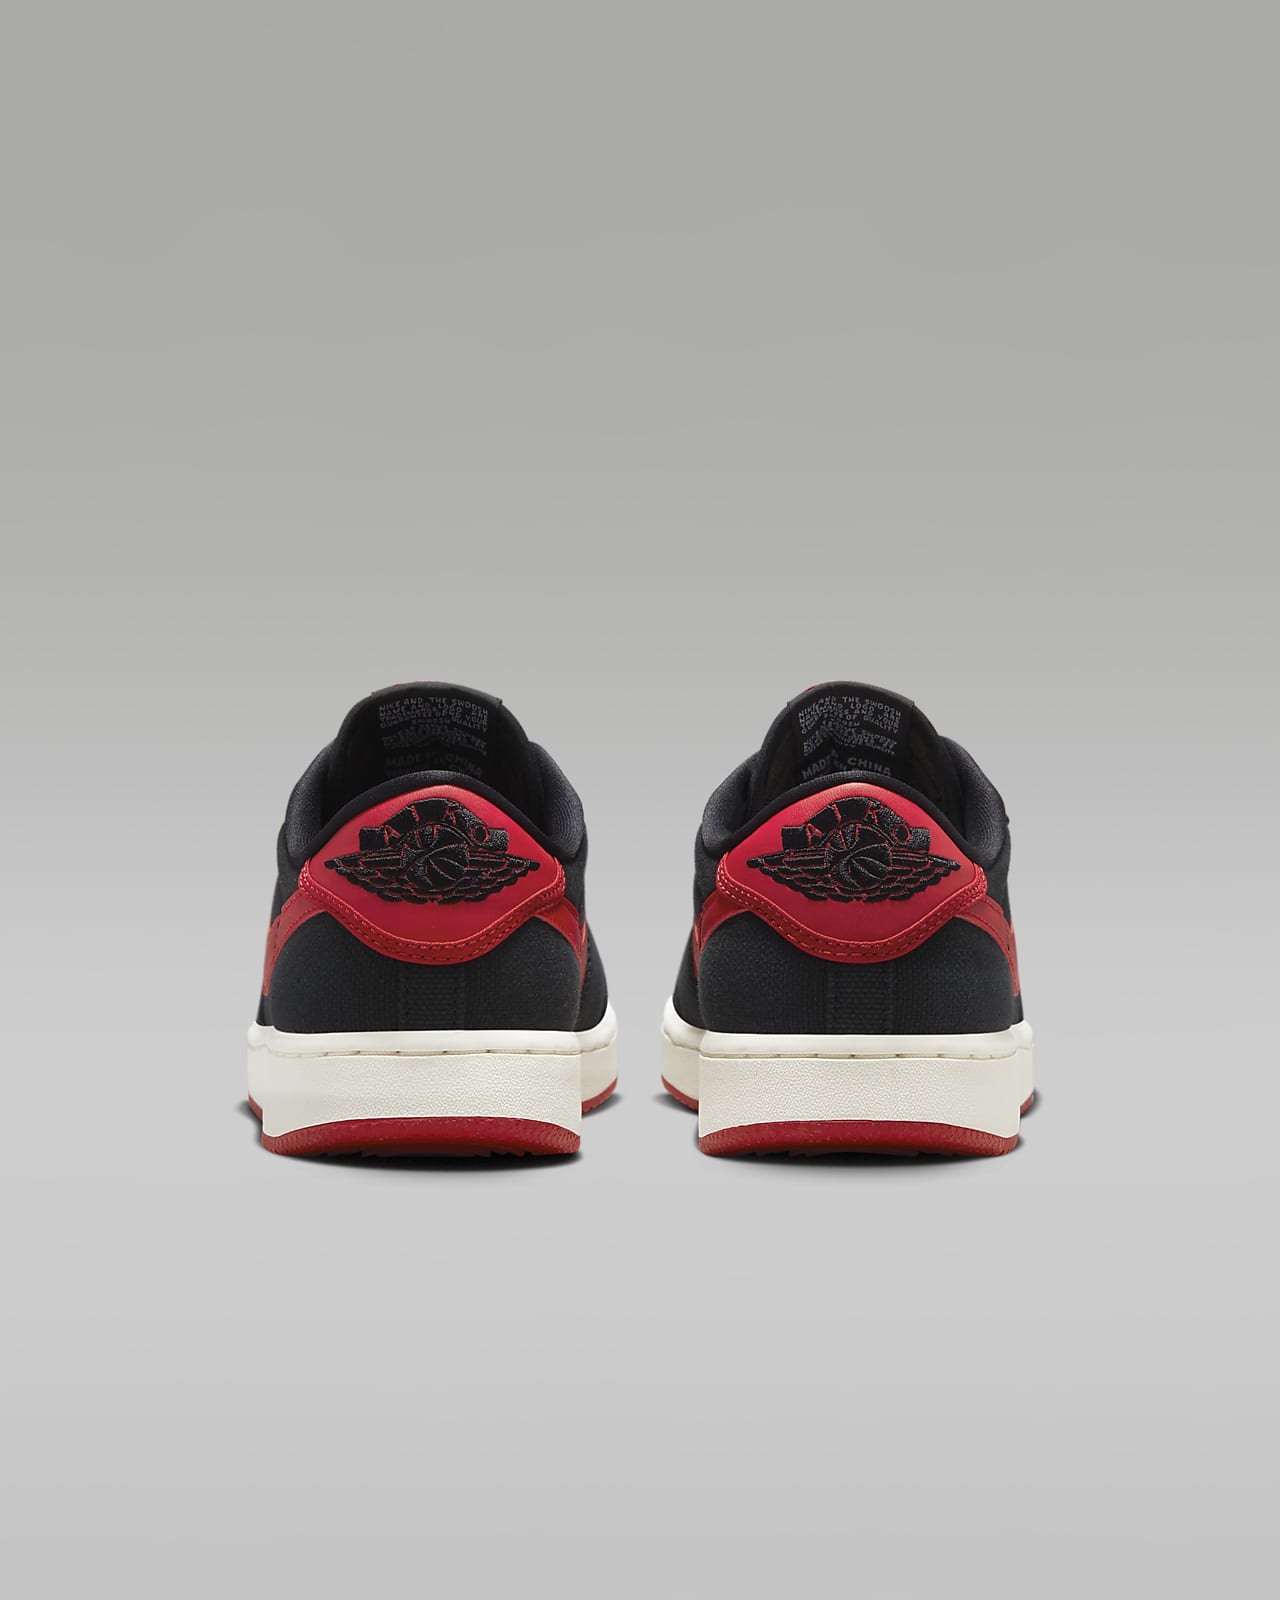 AJKO 1 Low Men's Shoes. Nike.com